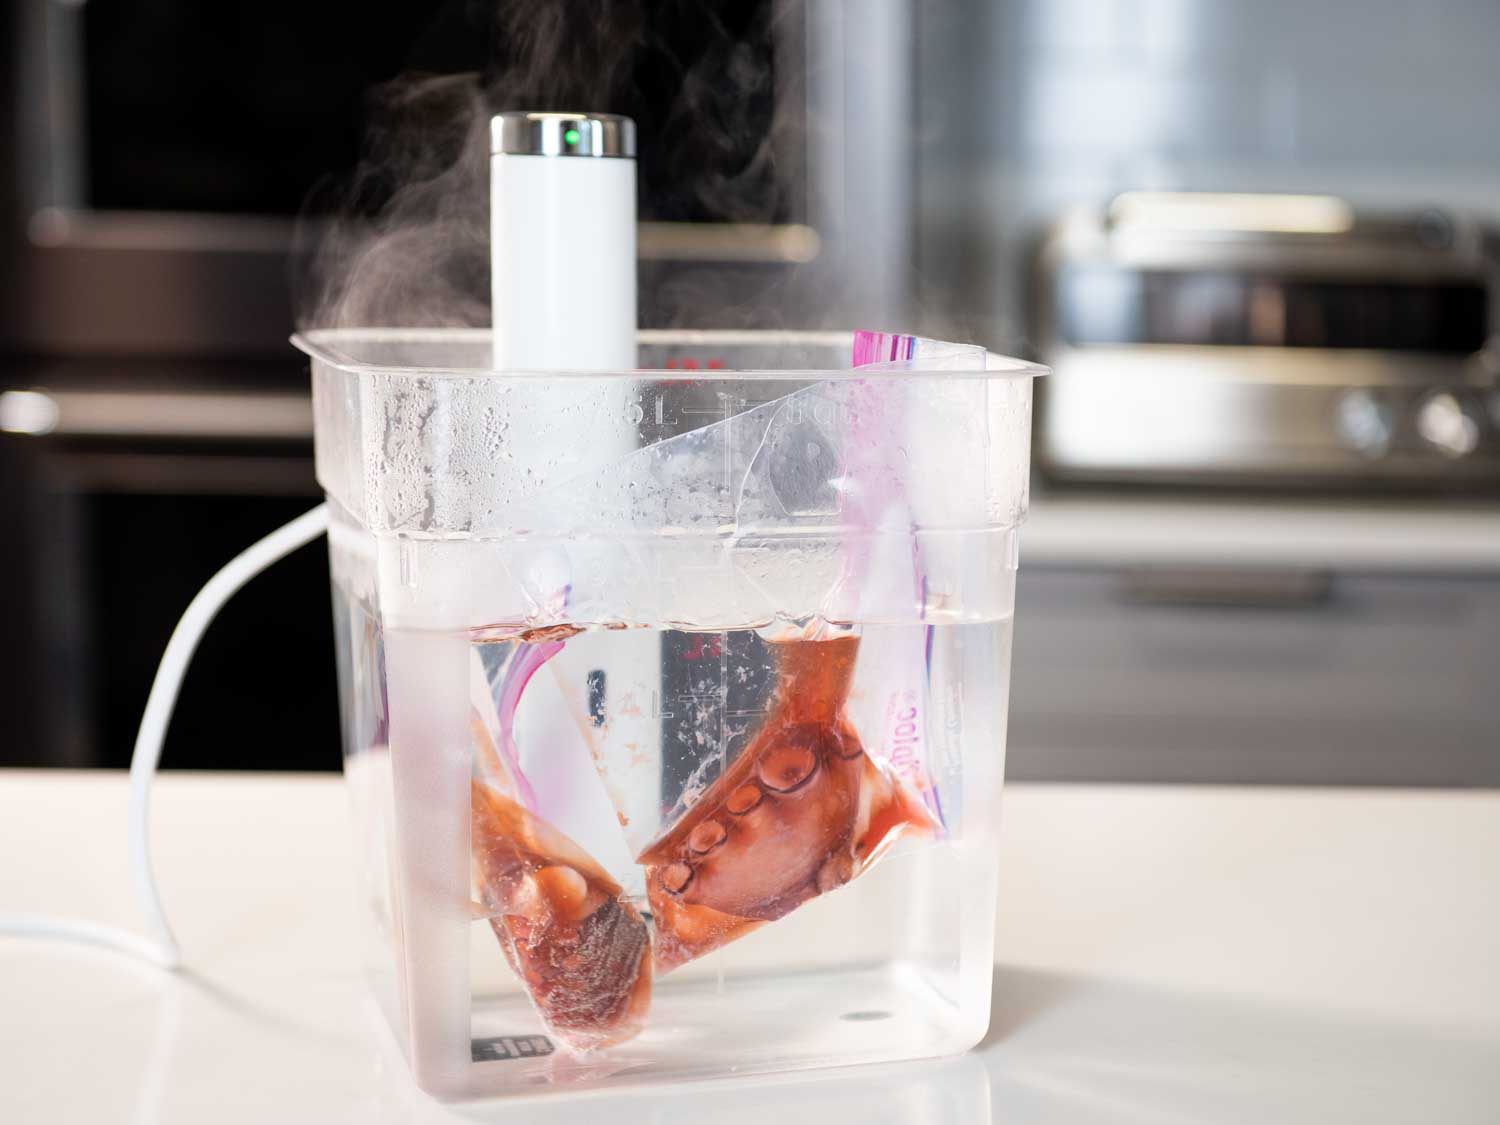 一个真空装置展示了一个浸入式循环器在一个装满水的透明容器中，煮熟的章鱼触手块漂浮在漂浮在水中的拉链锁袋中